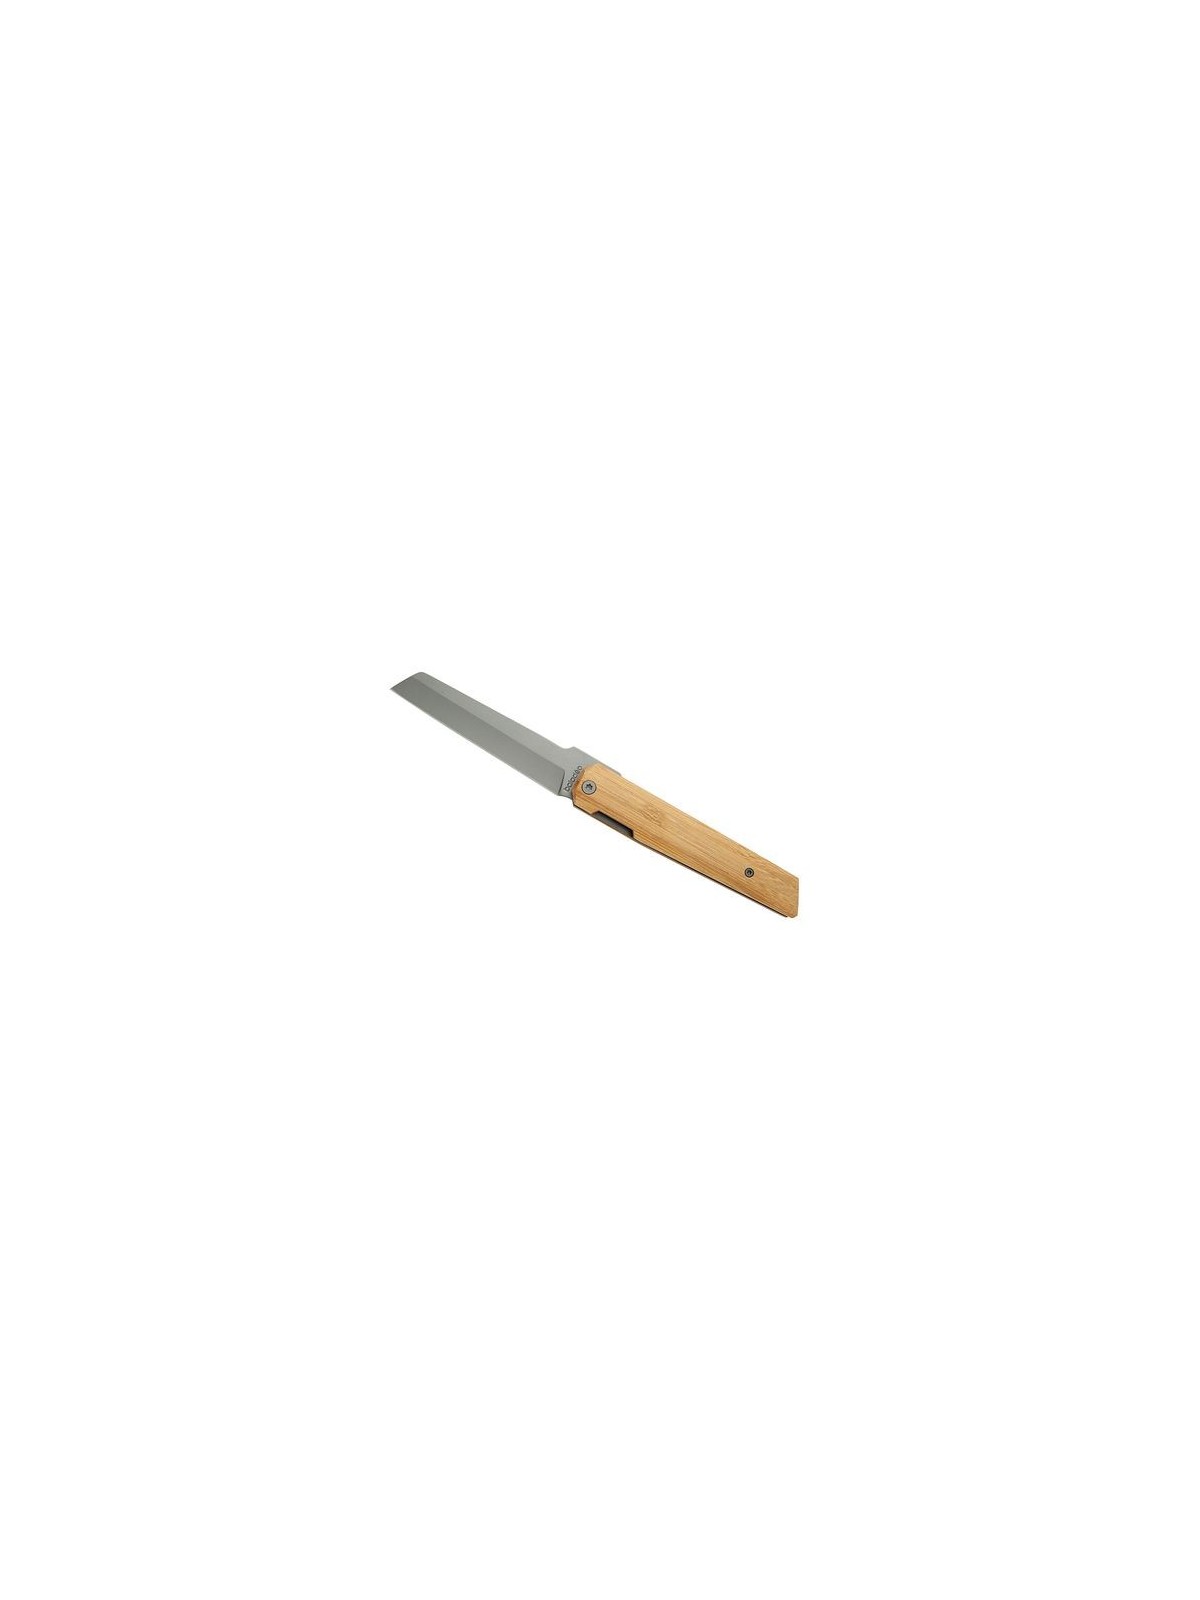 98-034 Couteau "Higonokami" en bambou personnalisé